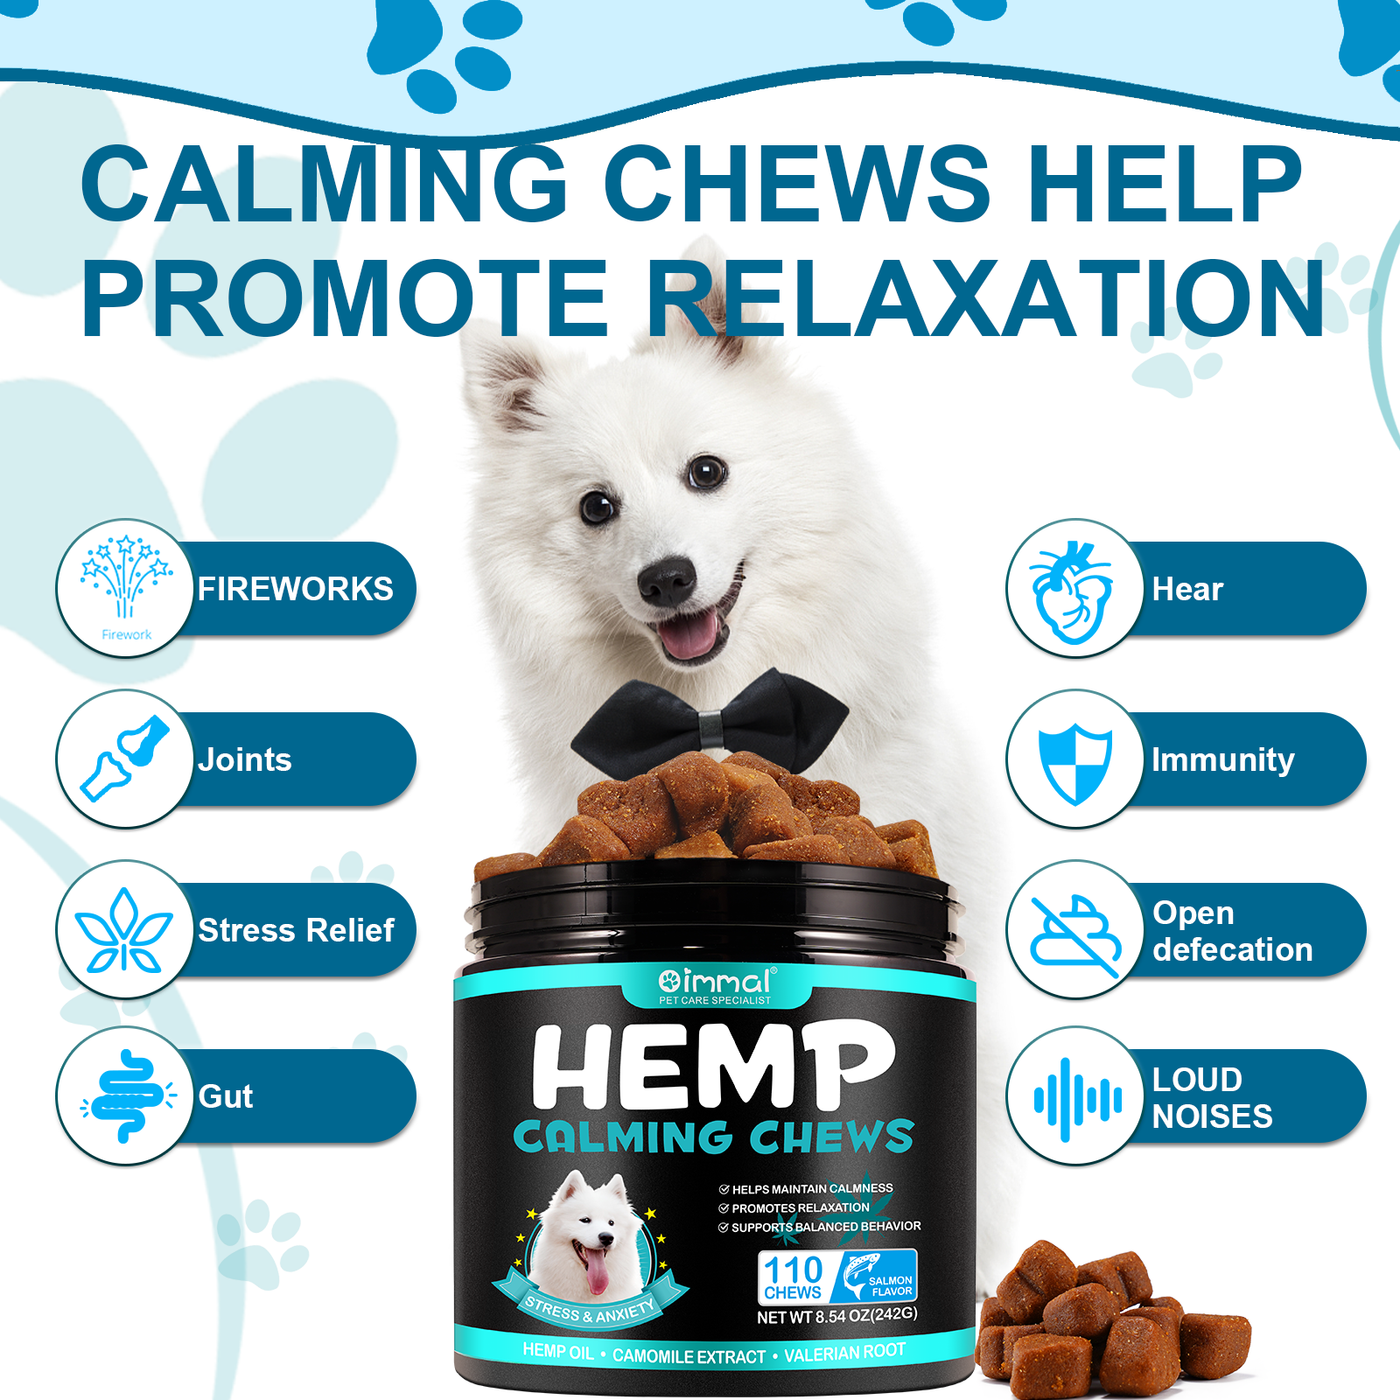 Oimmal Hemp Calming Chews / Salmon Flavor - 3 Packs